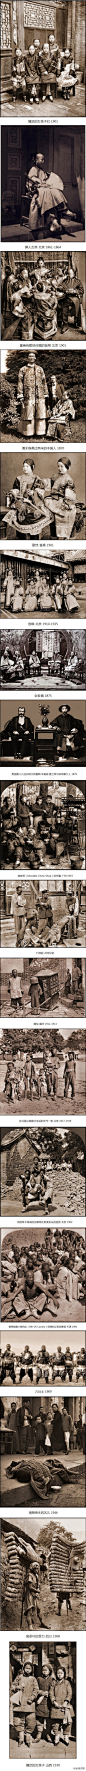 [] 就爱摄影让人震撼的100年前中国的好照片来自:新浪微博